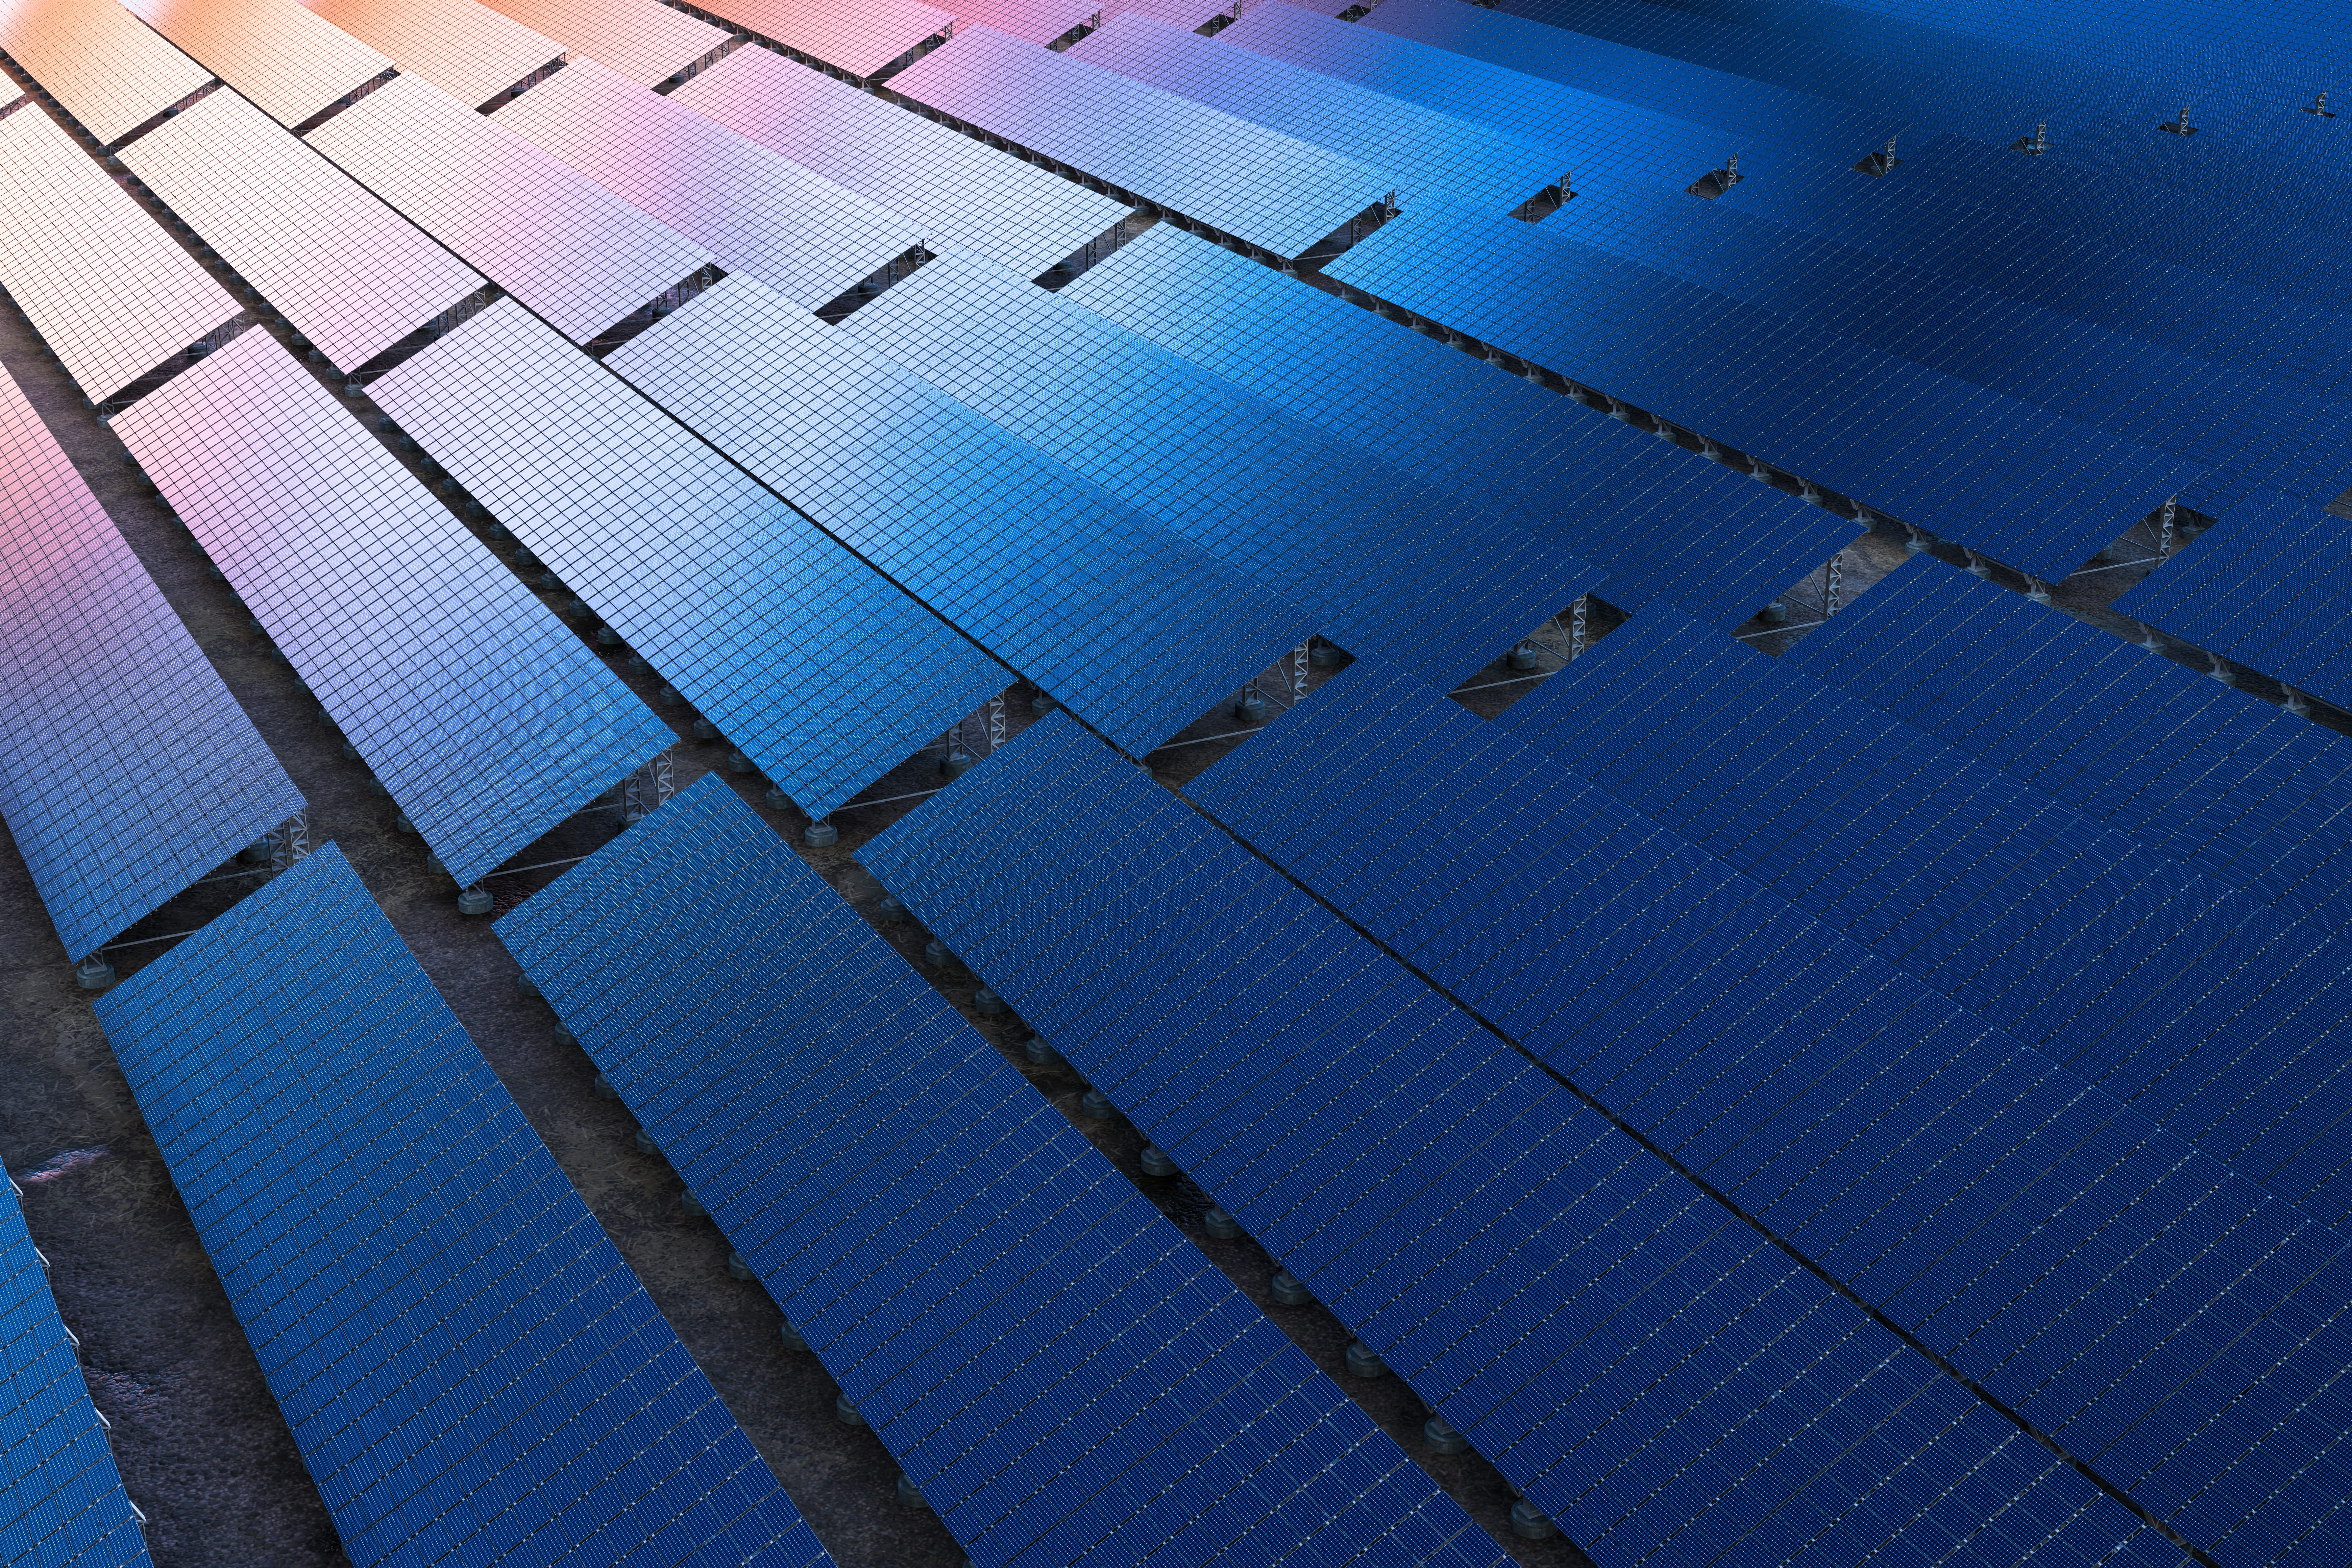 Strips of solar panels